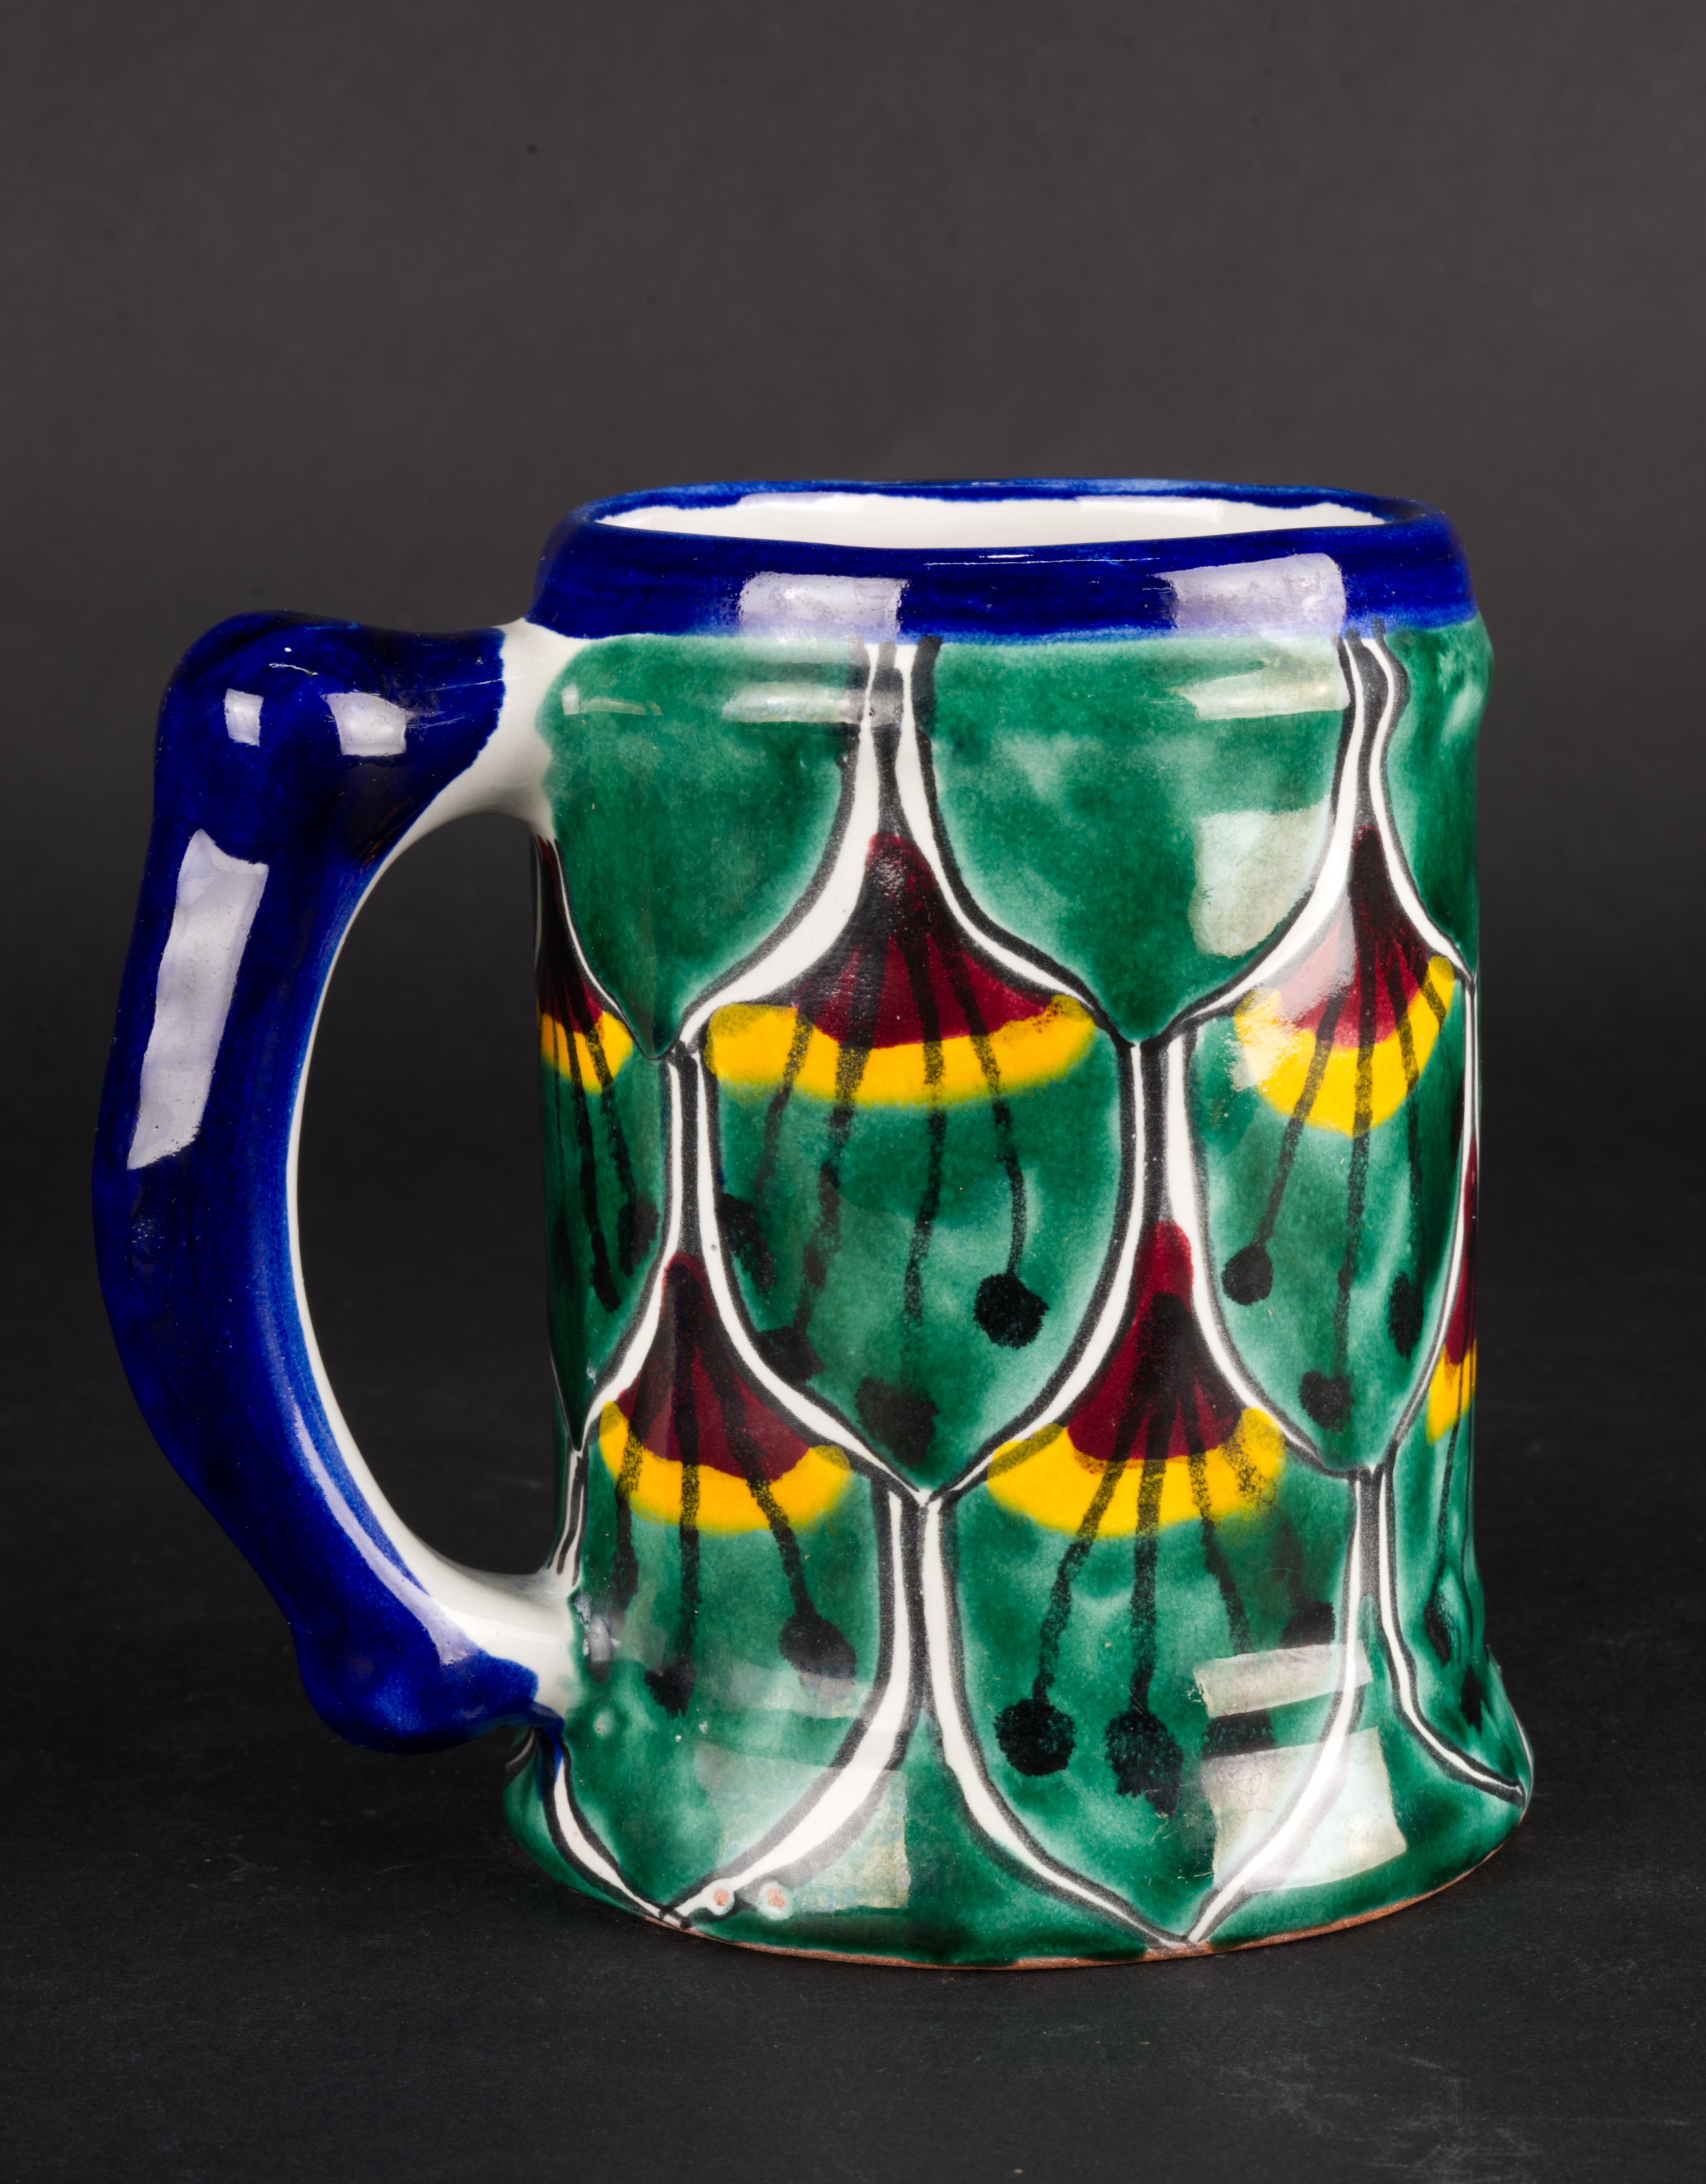 
Der übergroße Vintage-Becher oder -Krug wurde von Kunsthandwerkern in Talavera, Mexiko, handgefertigt. Die Tasse ist mit dem traditionellen Pfauenmuster in tiefem Grün und Blau mit dunkelroten und leuchtend orangefarbenen Akzenten verziert; der